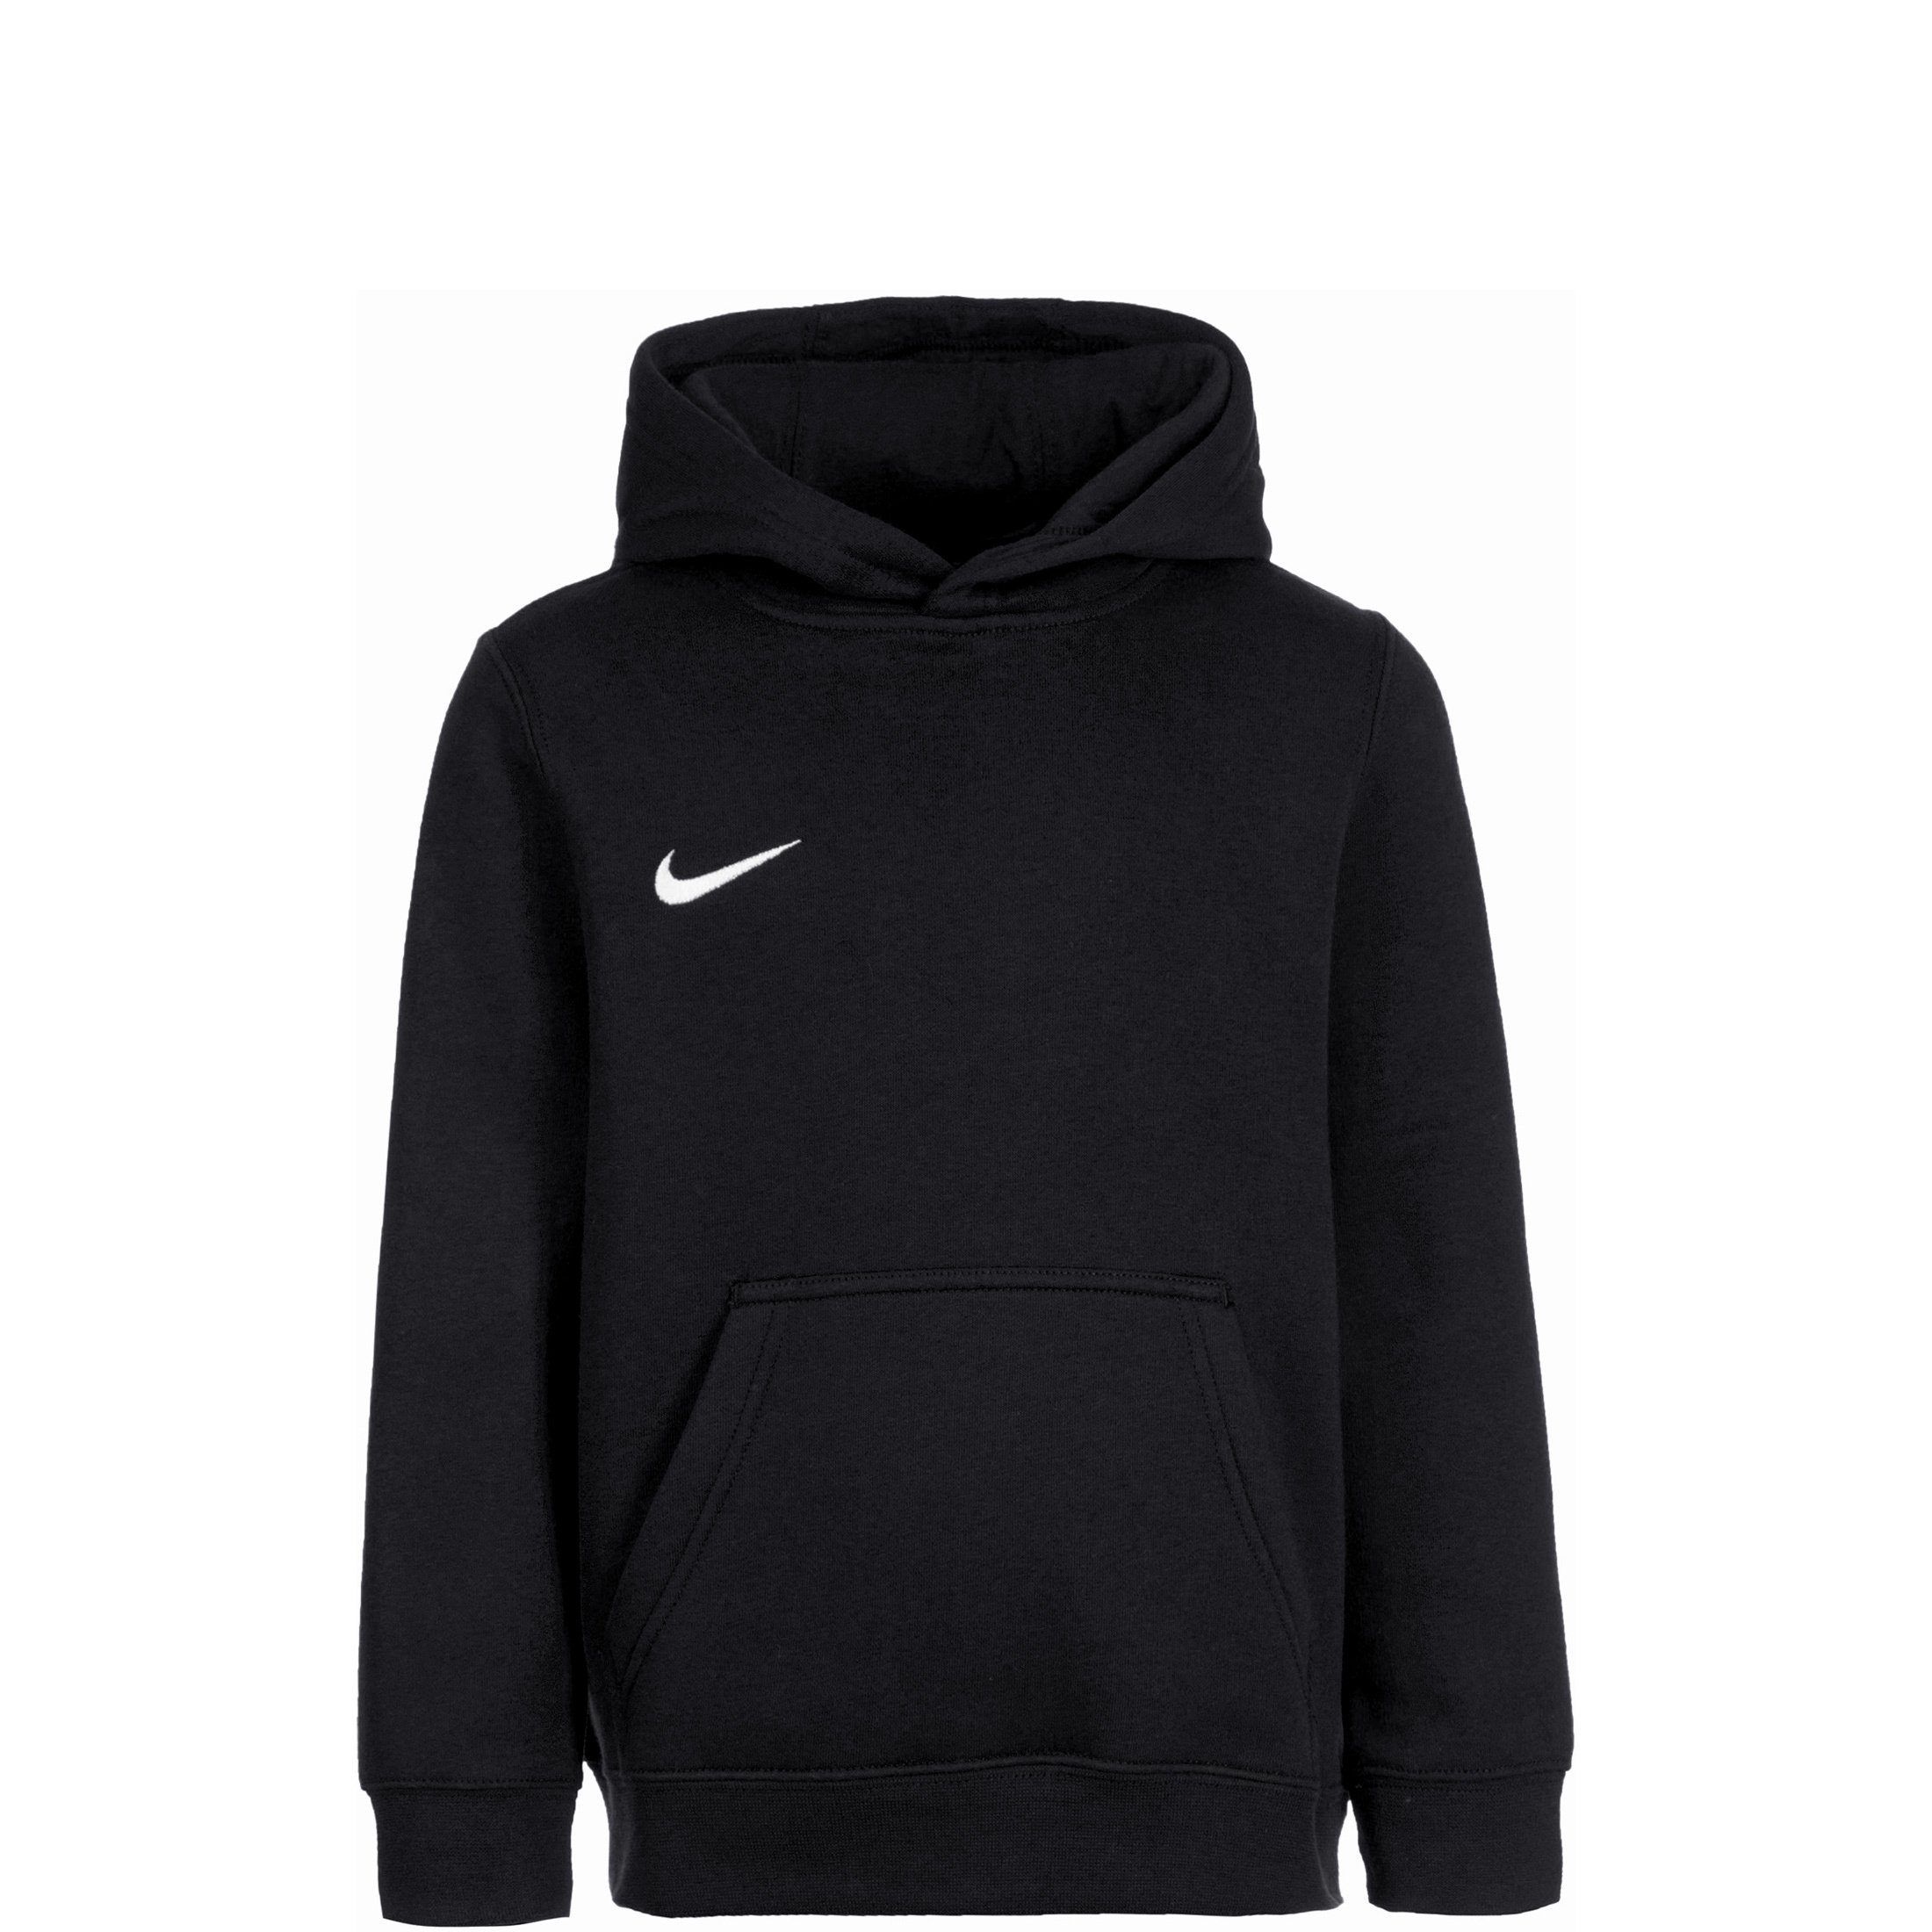 Nike Mädchen Sweatshirts online kaufen | OTTO